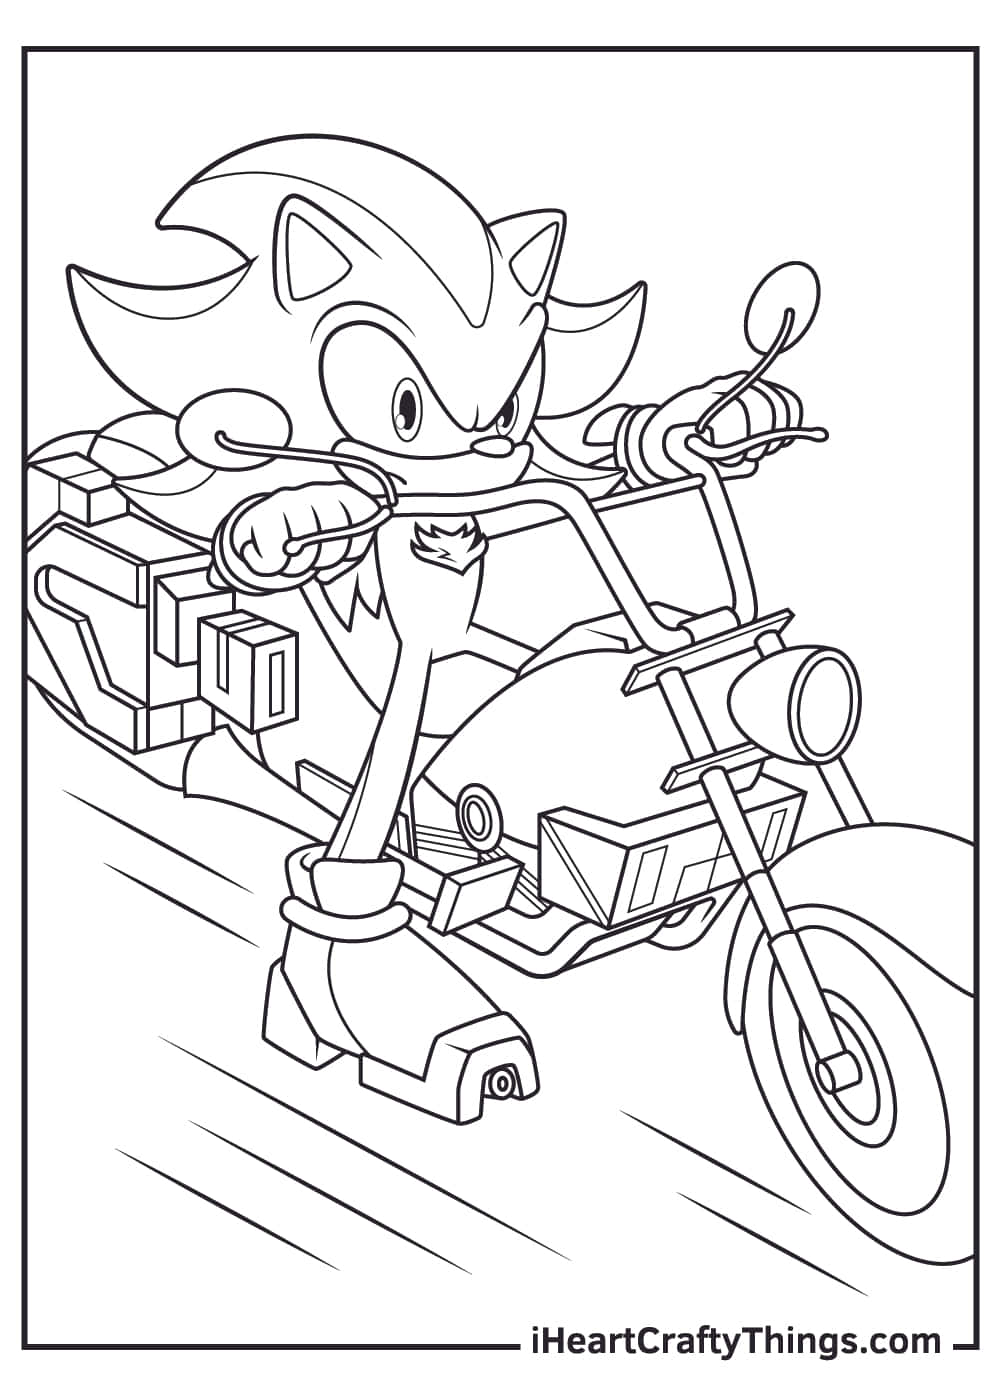 Immagineda Colorare Di Sonic Guidato Da Shadow The Hedgehog In Motocicletta.